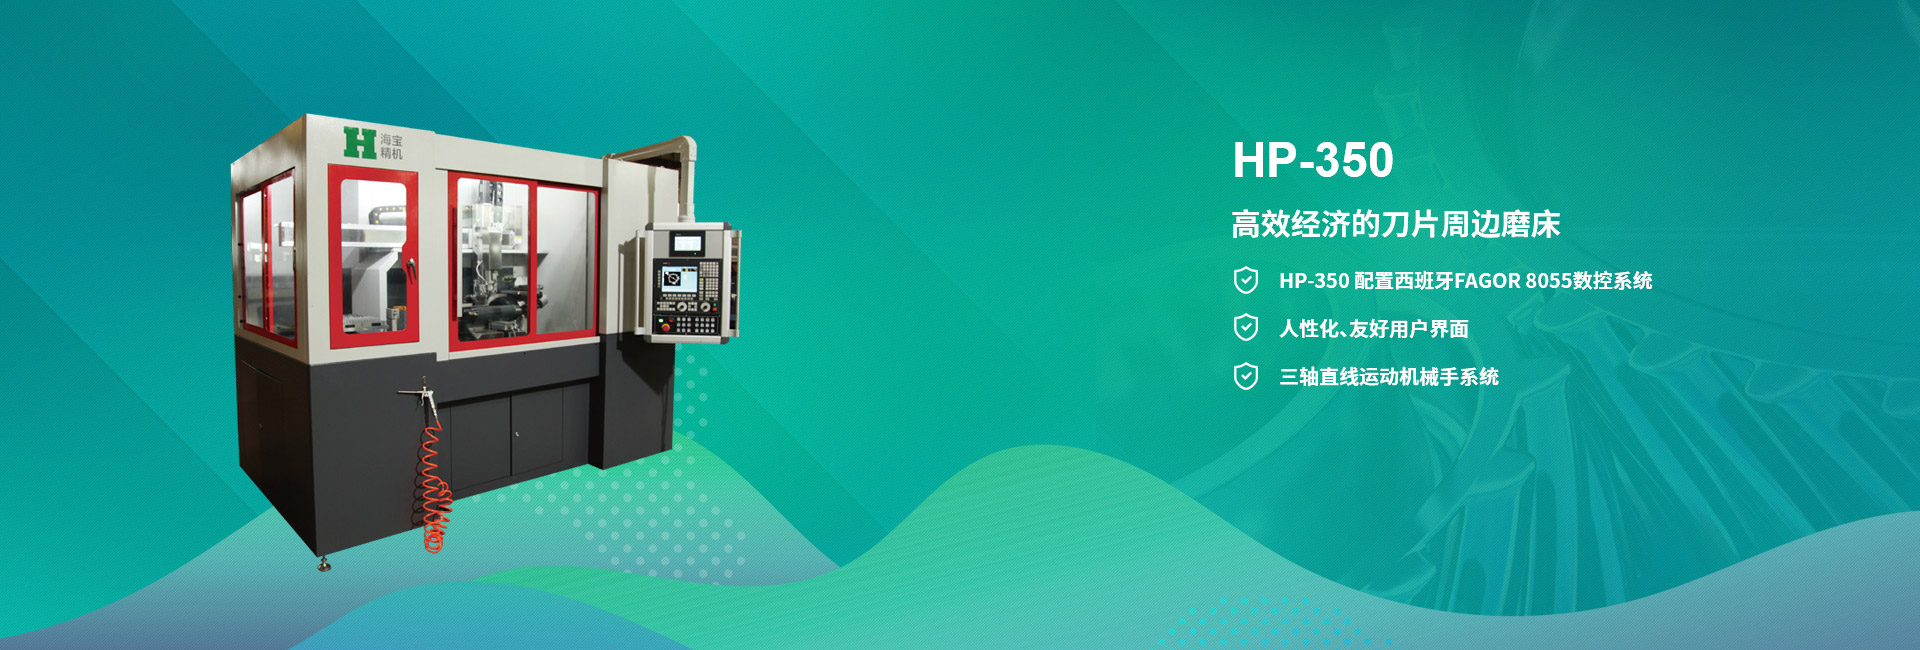 HP-350